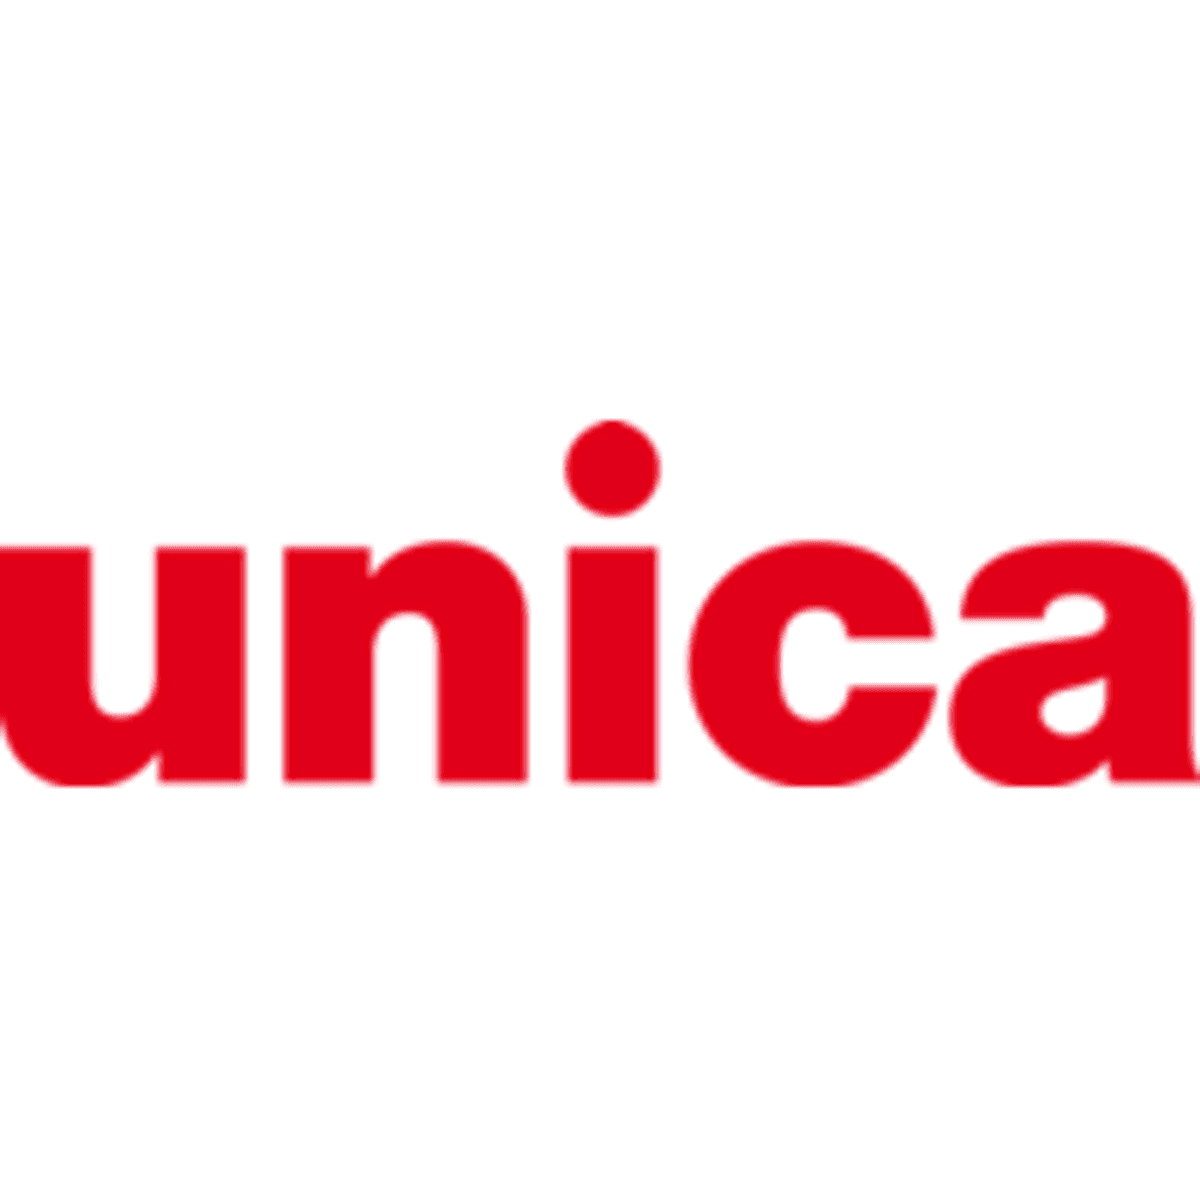 Unica boekt sterke groei in omzet image